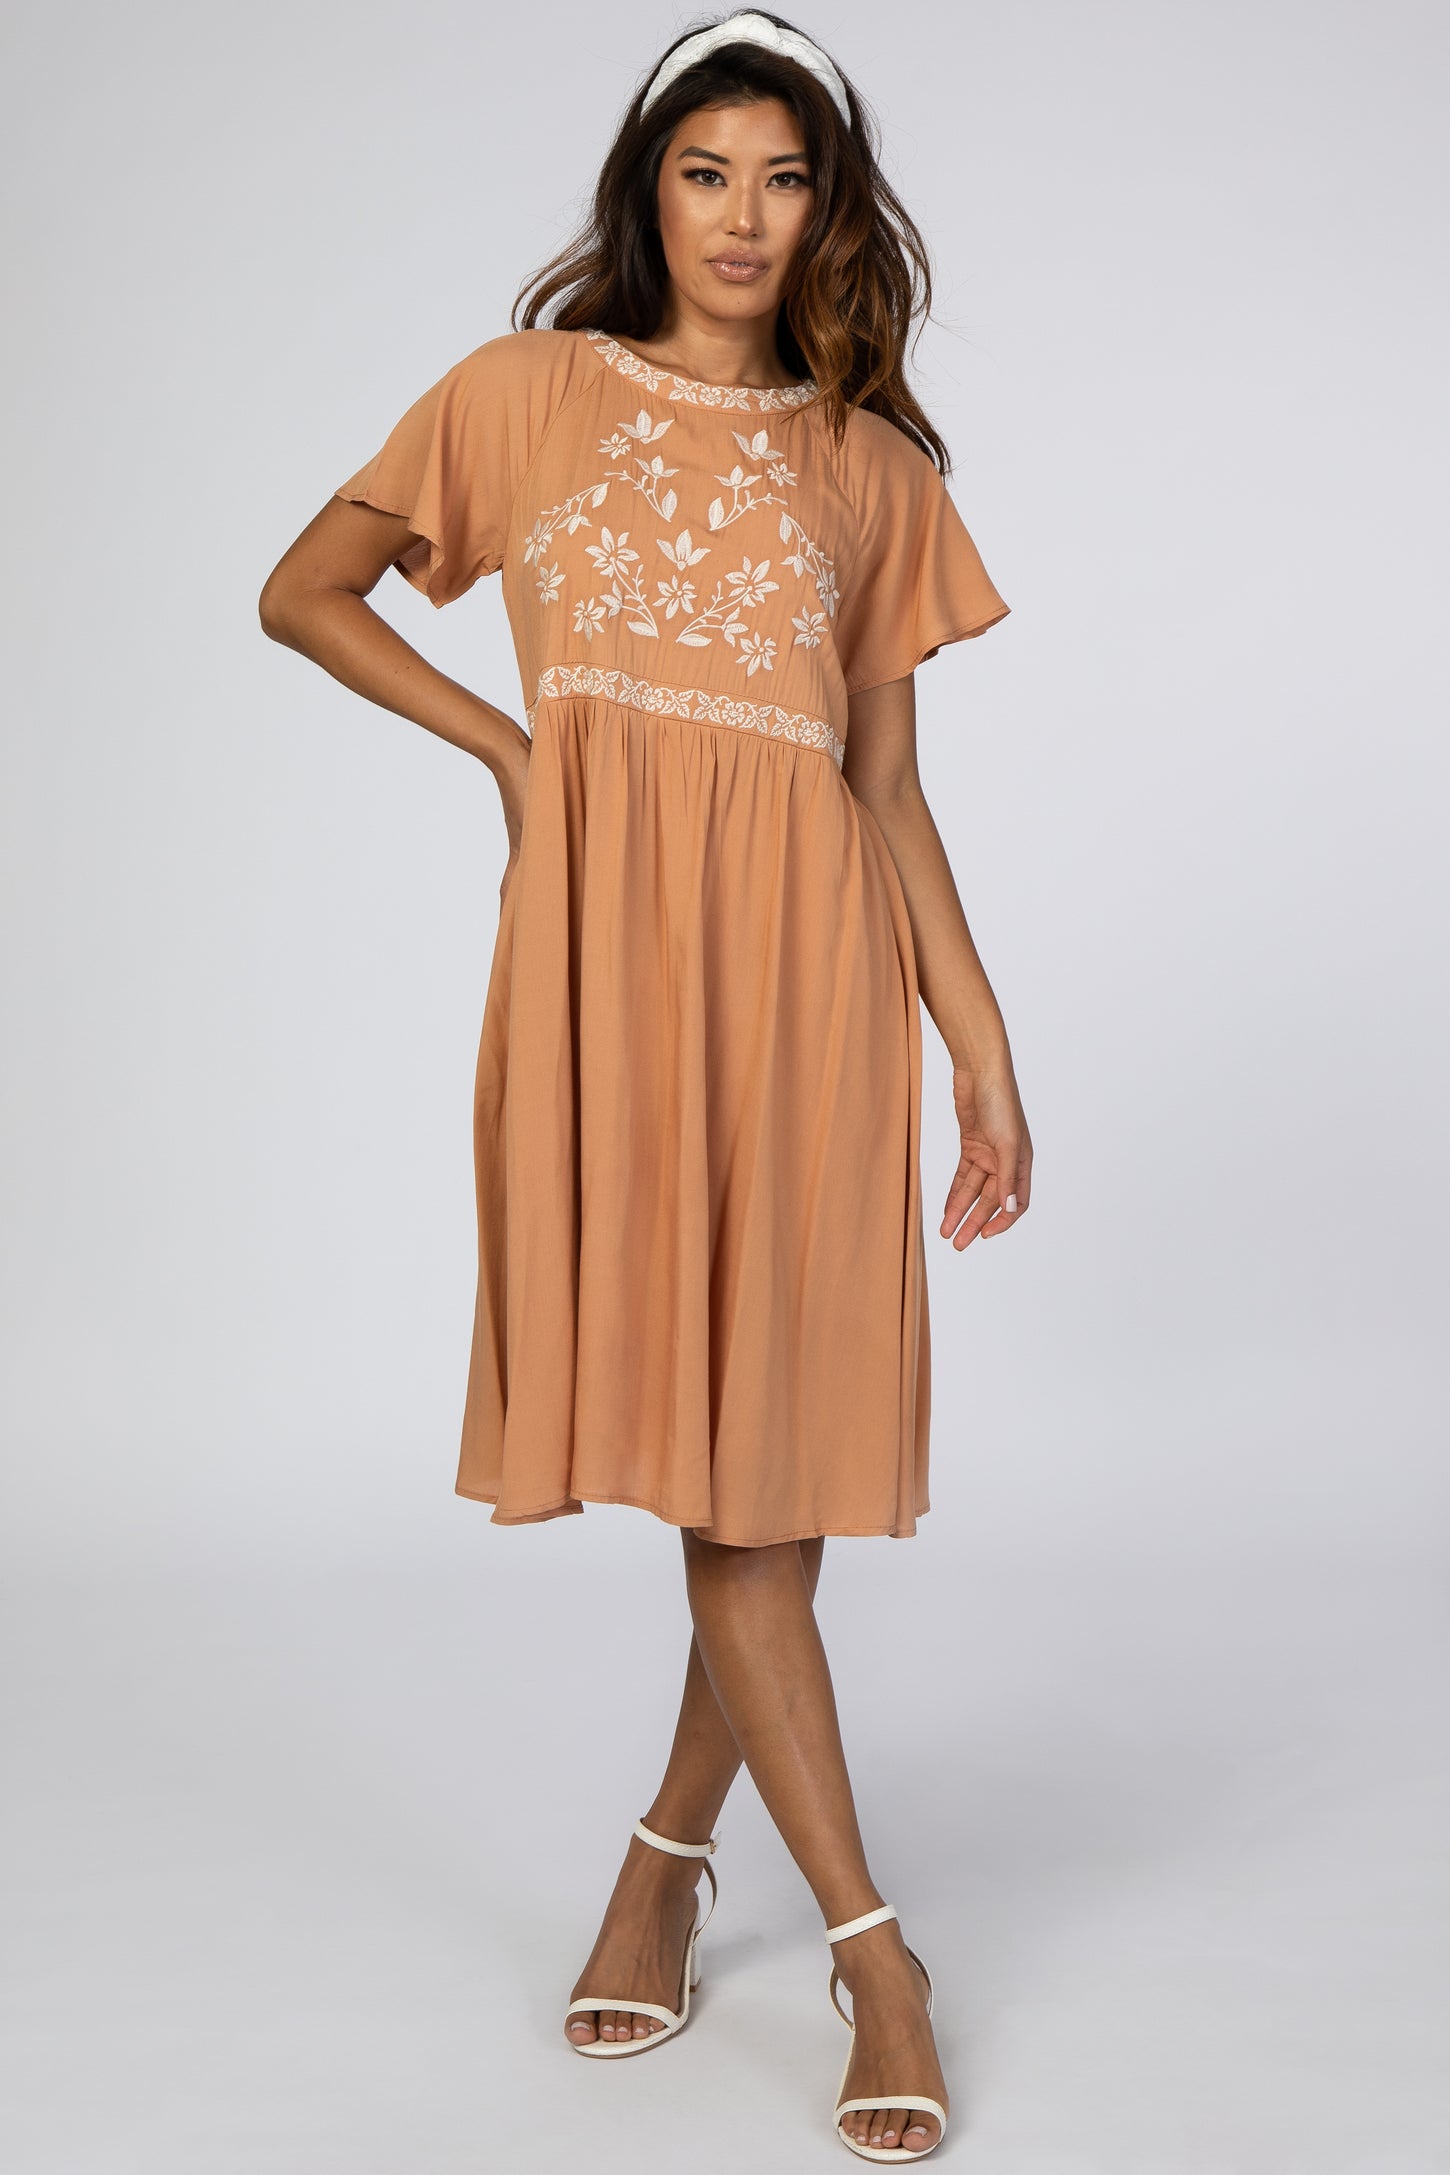 Orange Floral Embroidered Dress